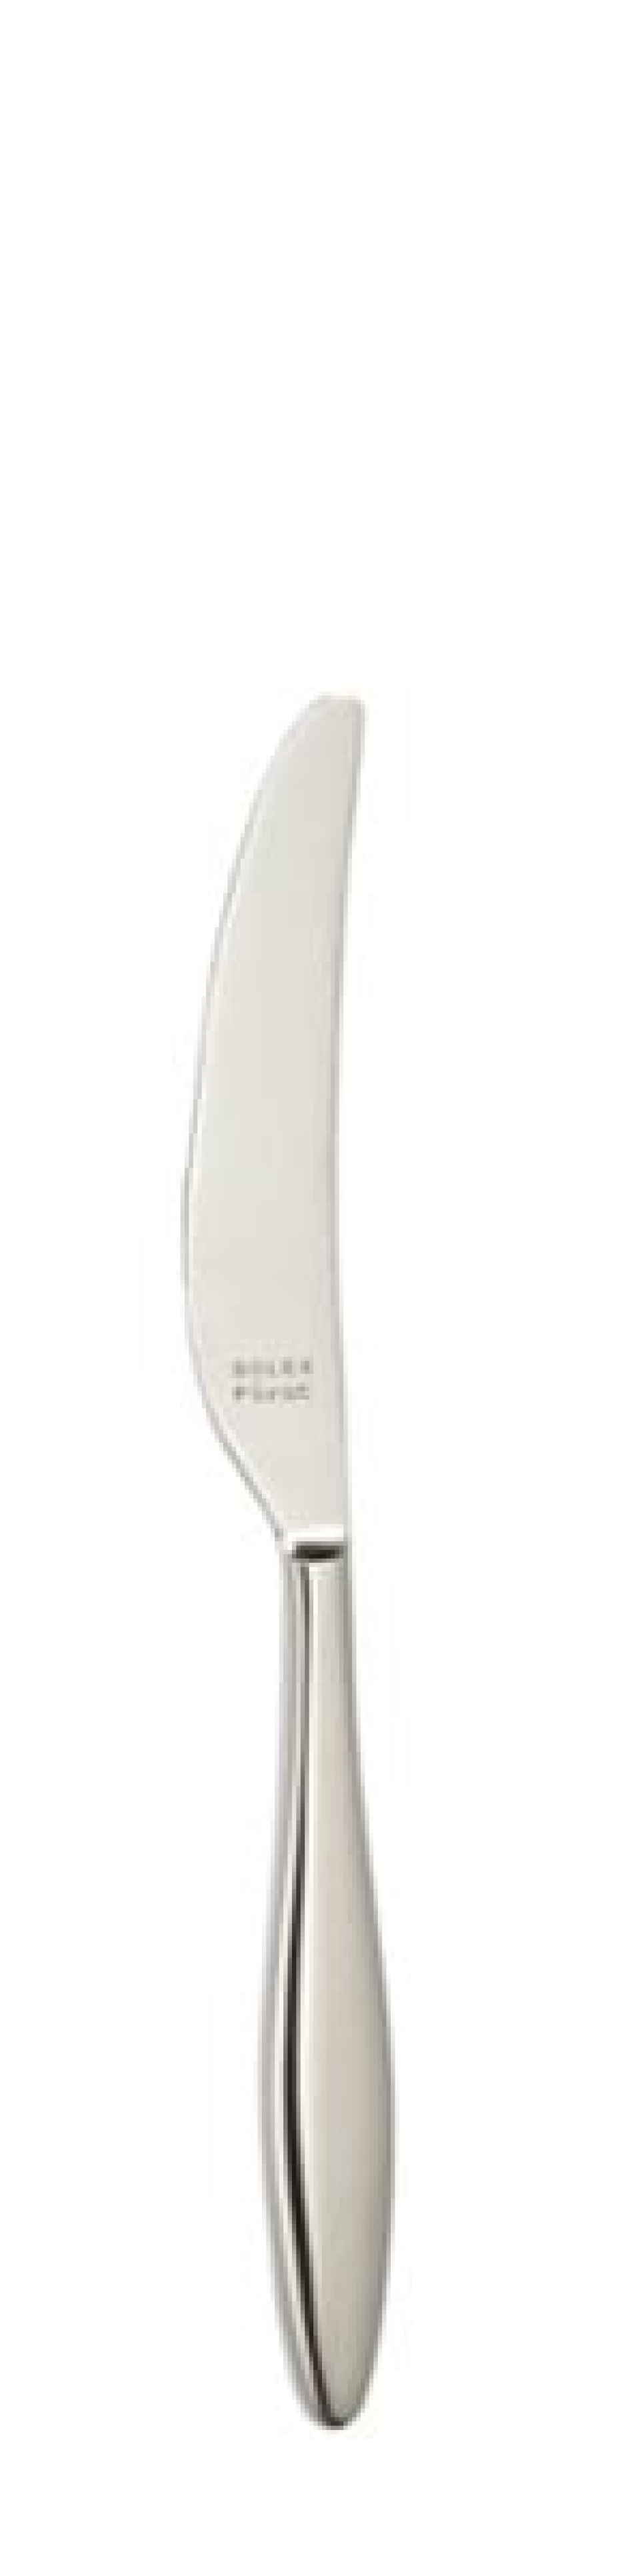 Nóż deserowy Terra 216 mm - Solex w grupie Nakrycie stołu / Sztućce / Noże w The Kitchen Lab (1284-21644)